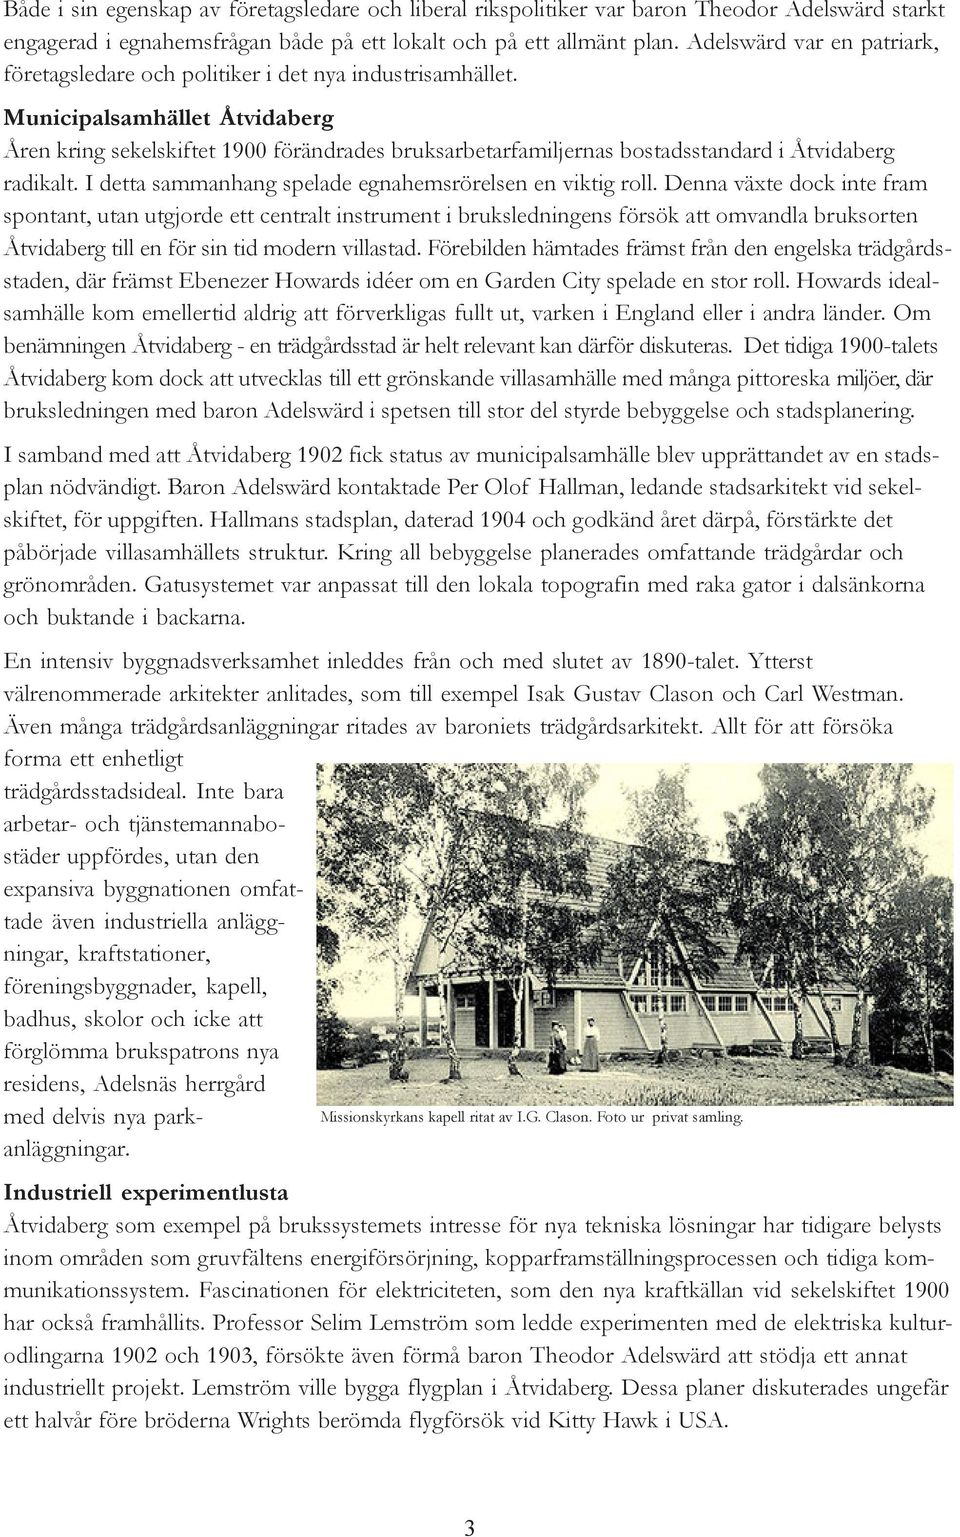 Municipalsamhället Åtvidaberg Åren kring sekelskiftet 1900 förändrades bruksarbetarfamiljernas bostadsstandard i Åtvidaberg radikalt. I detta sammanhang spelade egnahemsrörelsen en viktig roll.